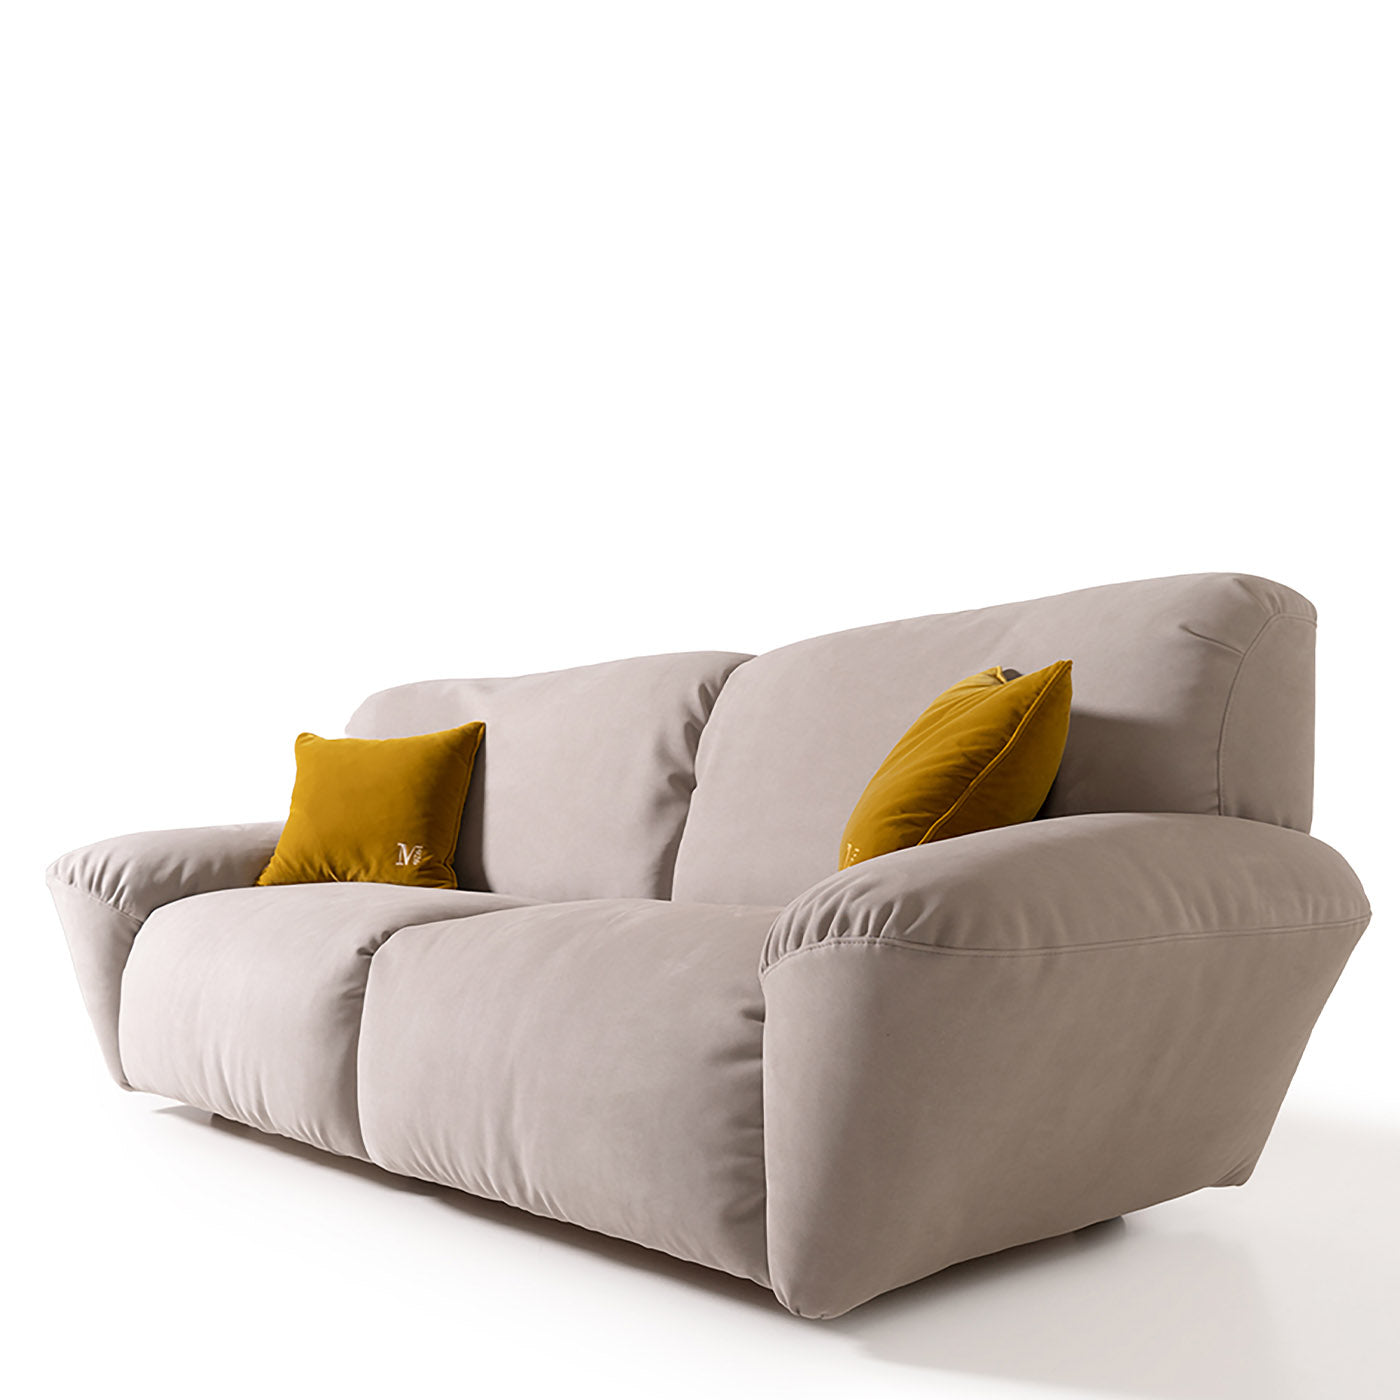 Beluga 2-sitziges midi-sofa von Marco und Giulio Mantellassi - Alternative Ansicht 4